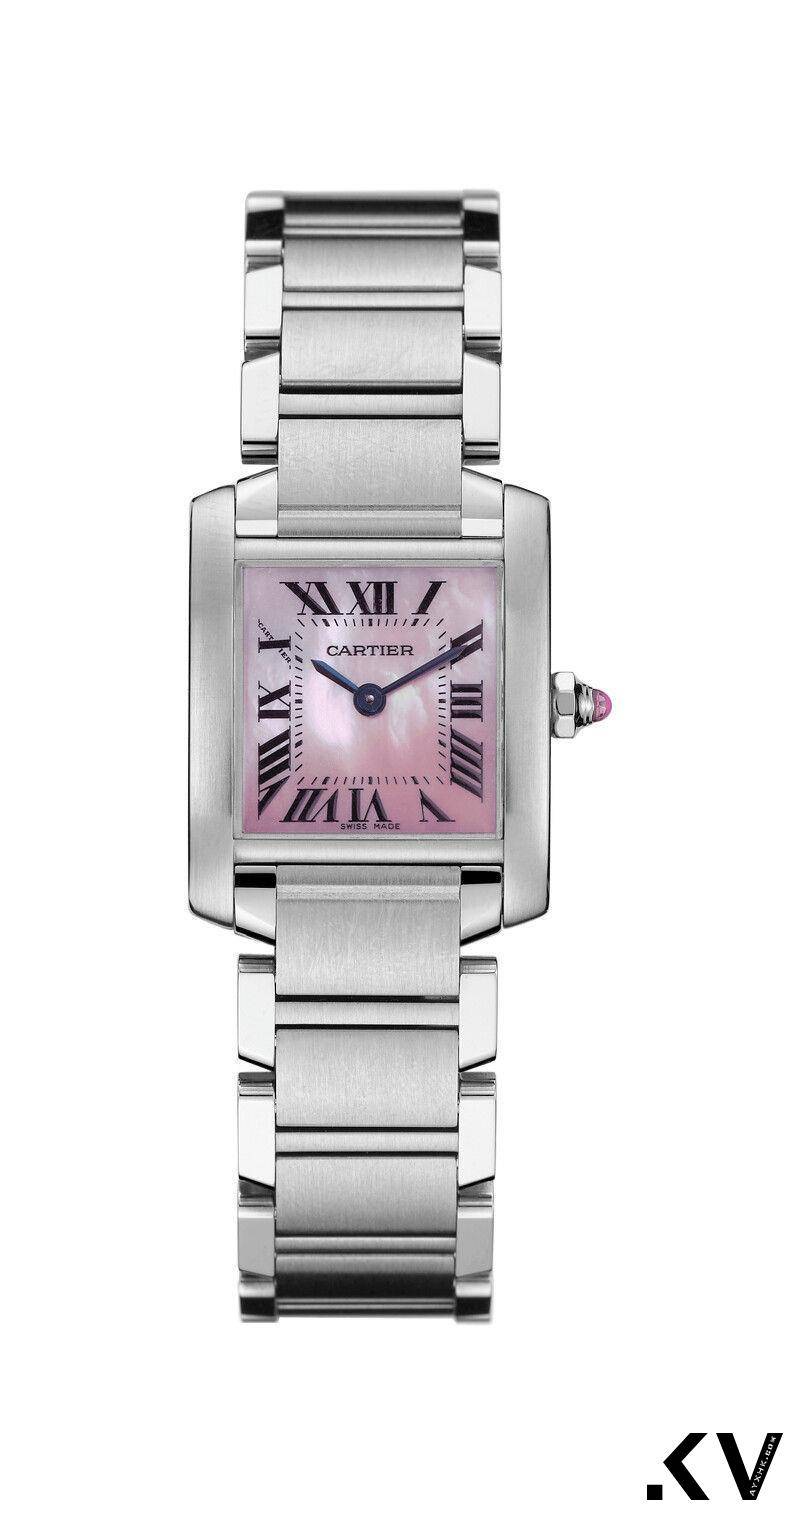 15款梦幻“粉红色手表”　雷恩葛斯林同款、Cartier男女戴都时髦 奢侈品牌 图9张